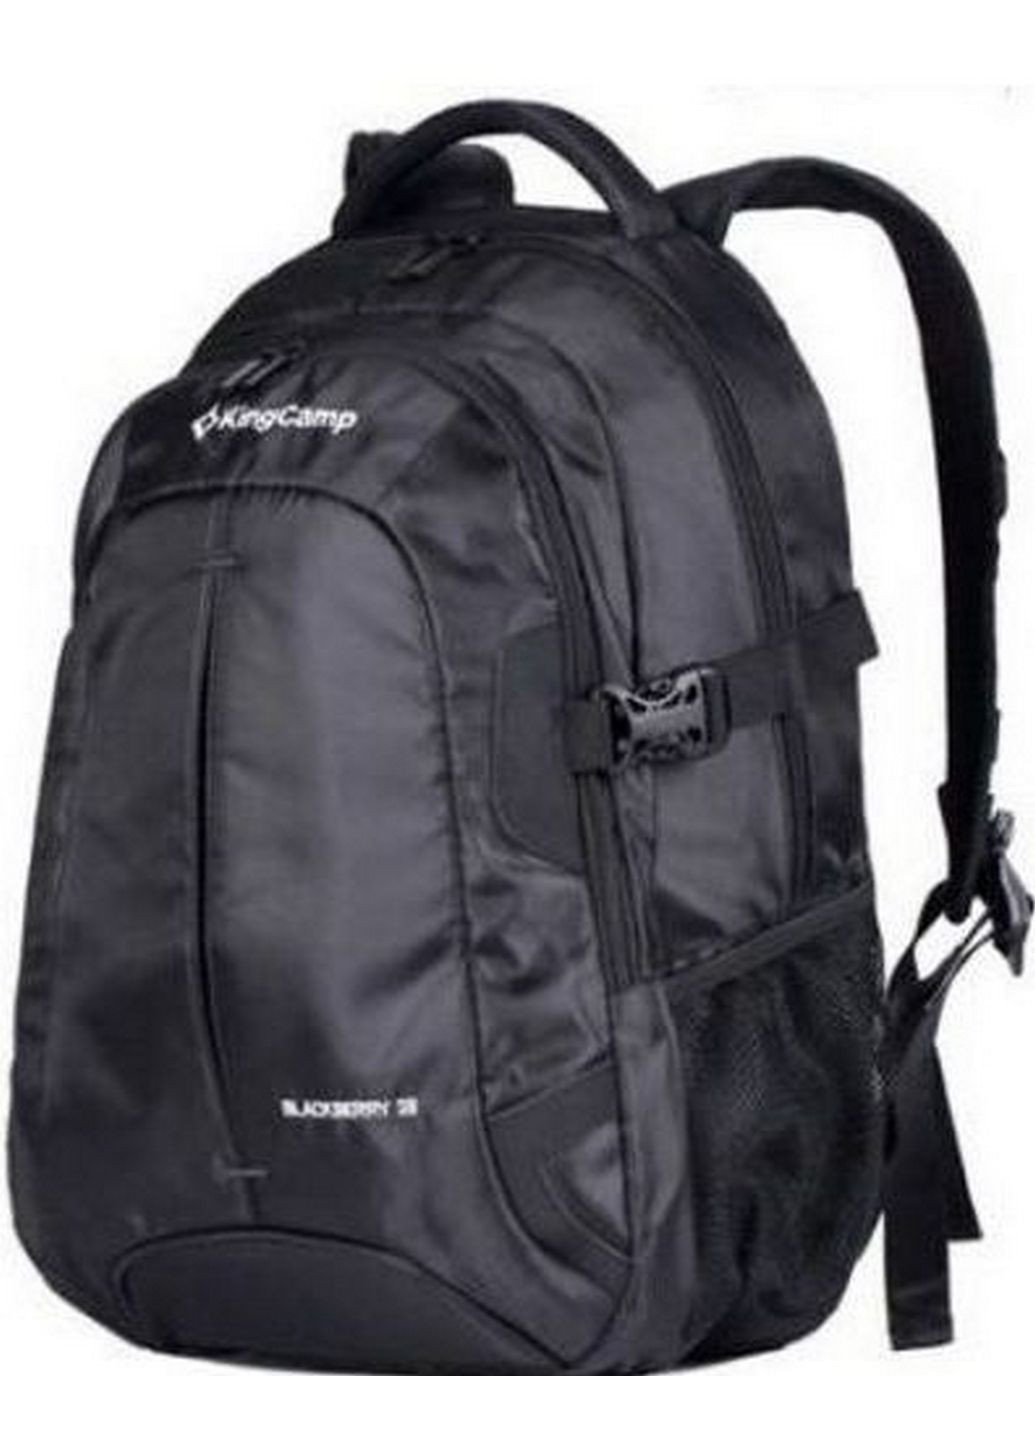 Міський рюкзак 28L Blackberry 33х45х19 см KingCamp (288047169)